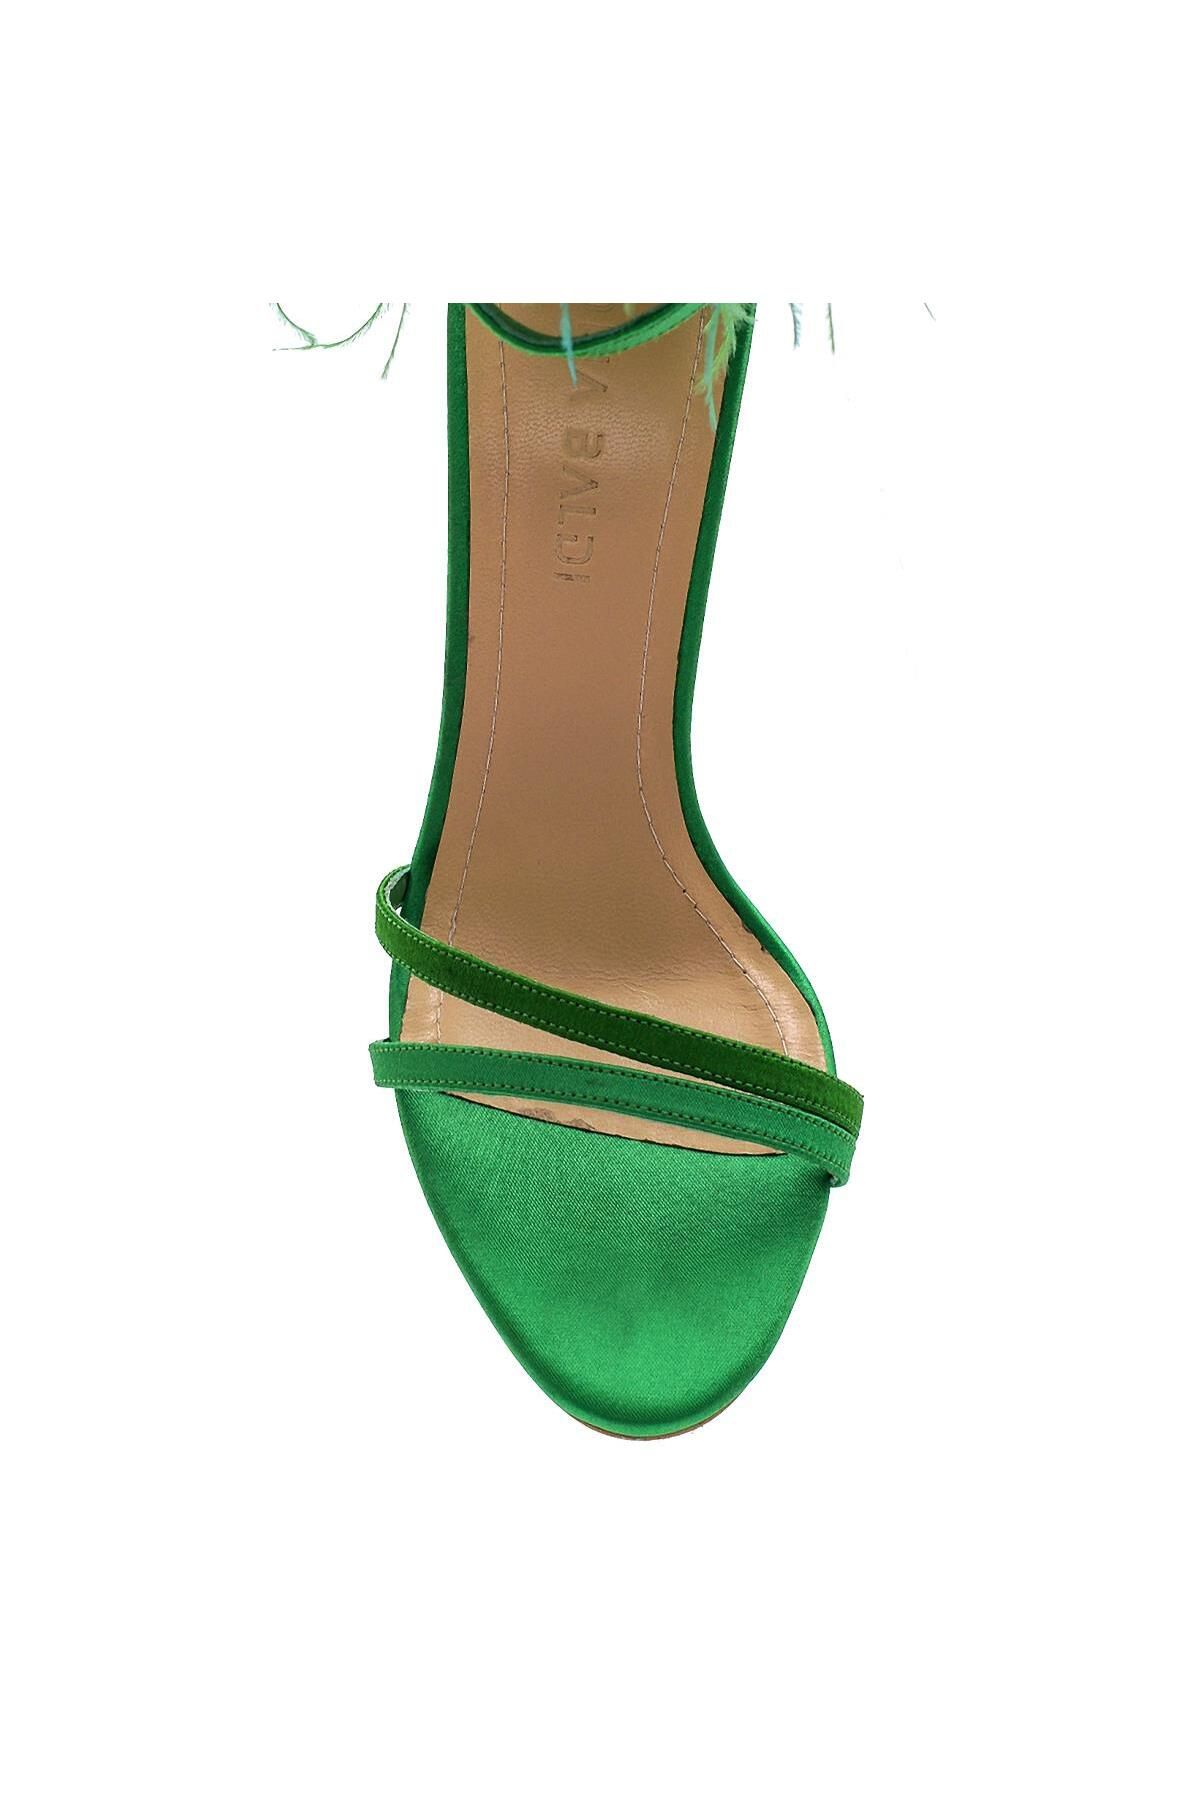 Sofia Baldi Nıda Yeşil Saten Kadın Topuklu Sandalet